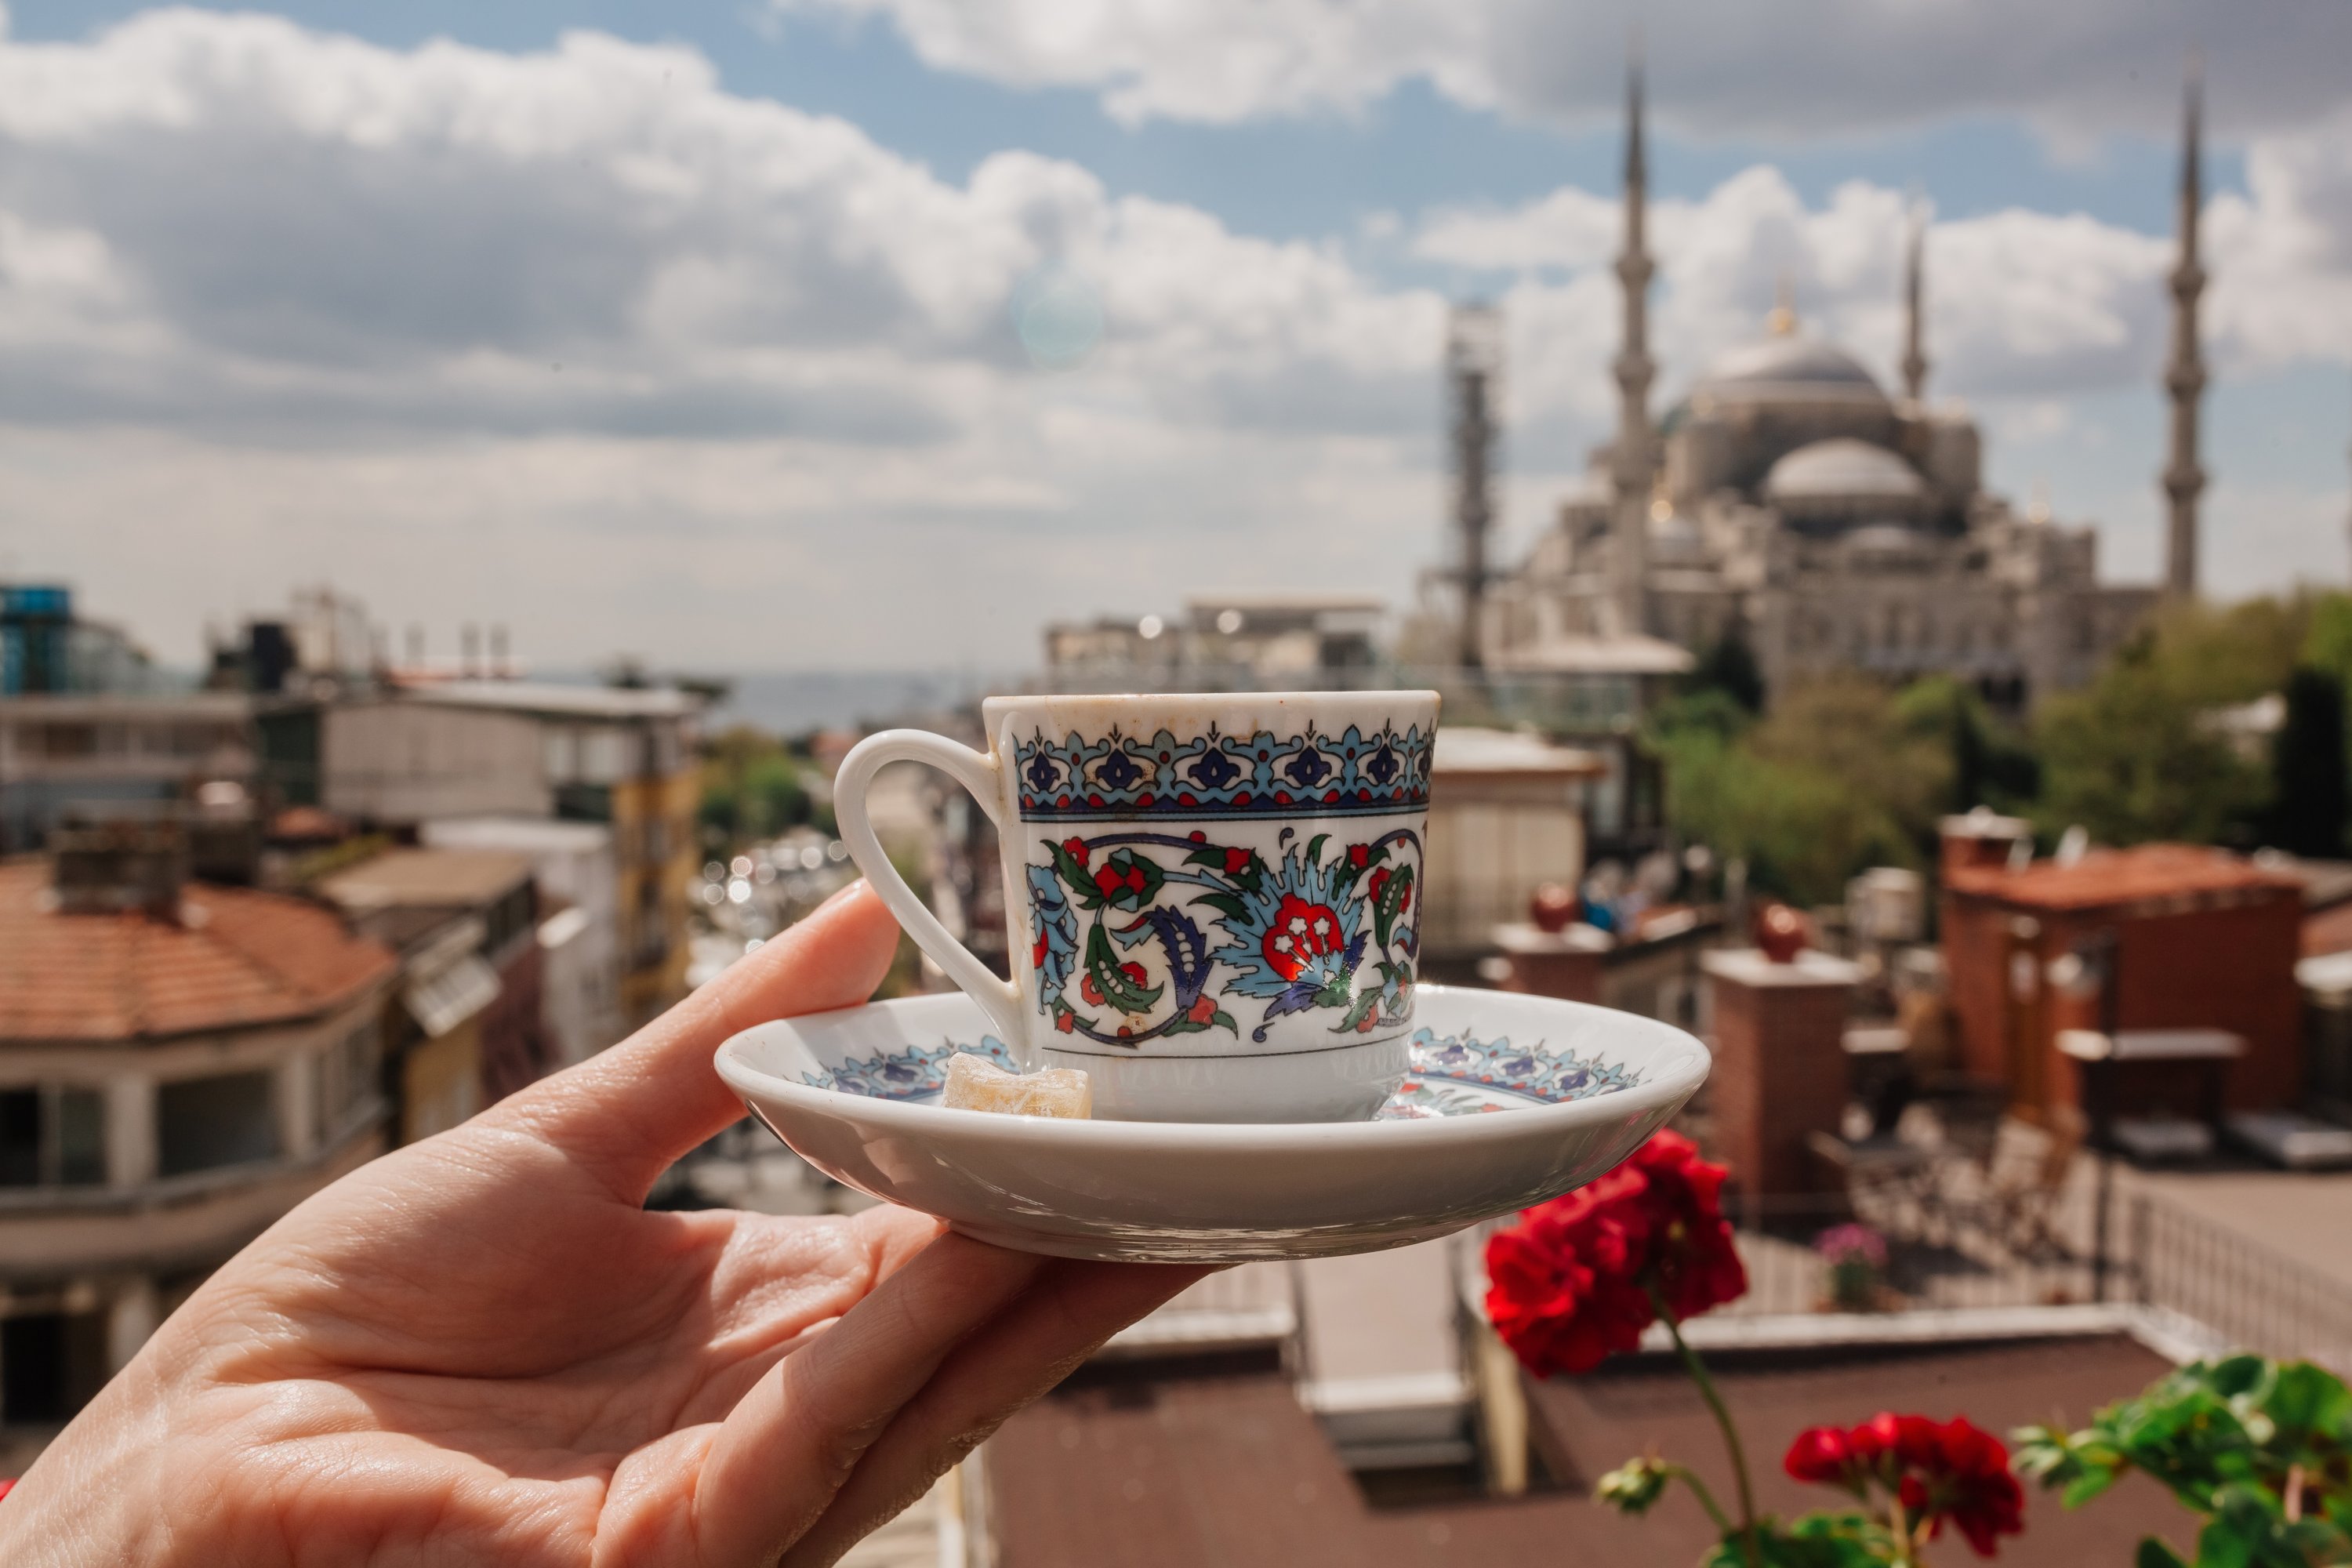 İstanbul, Türkiye'de bir cami manzarasının önünde süslemeli geleneksel Türk kahvesi fincanı.  (Shutterstock Fotoğrafı)